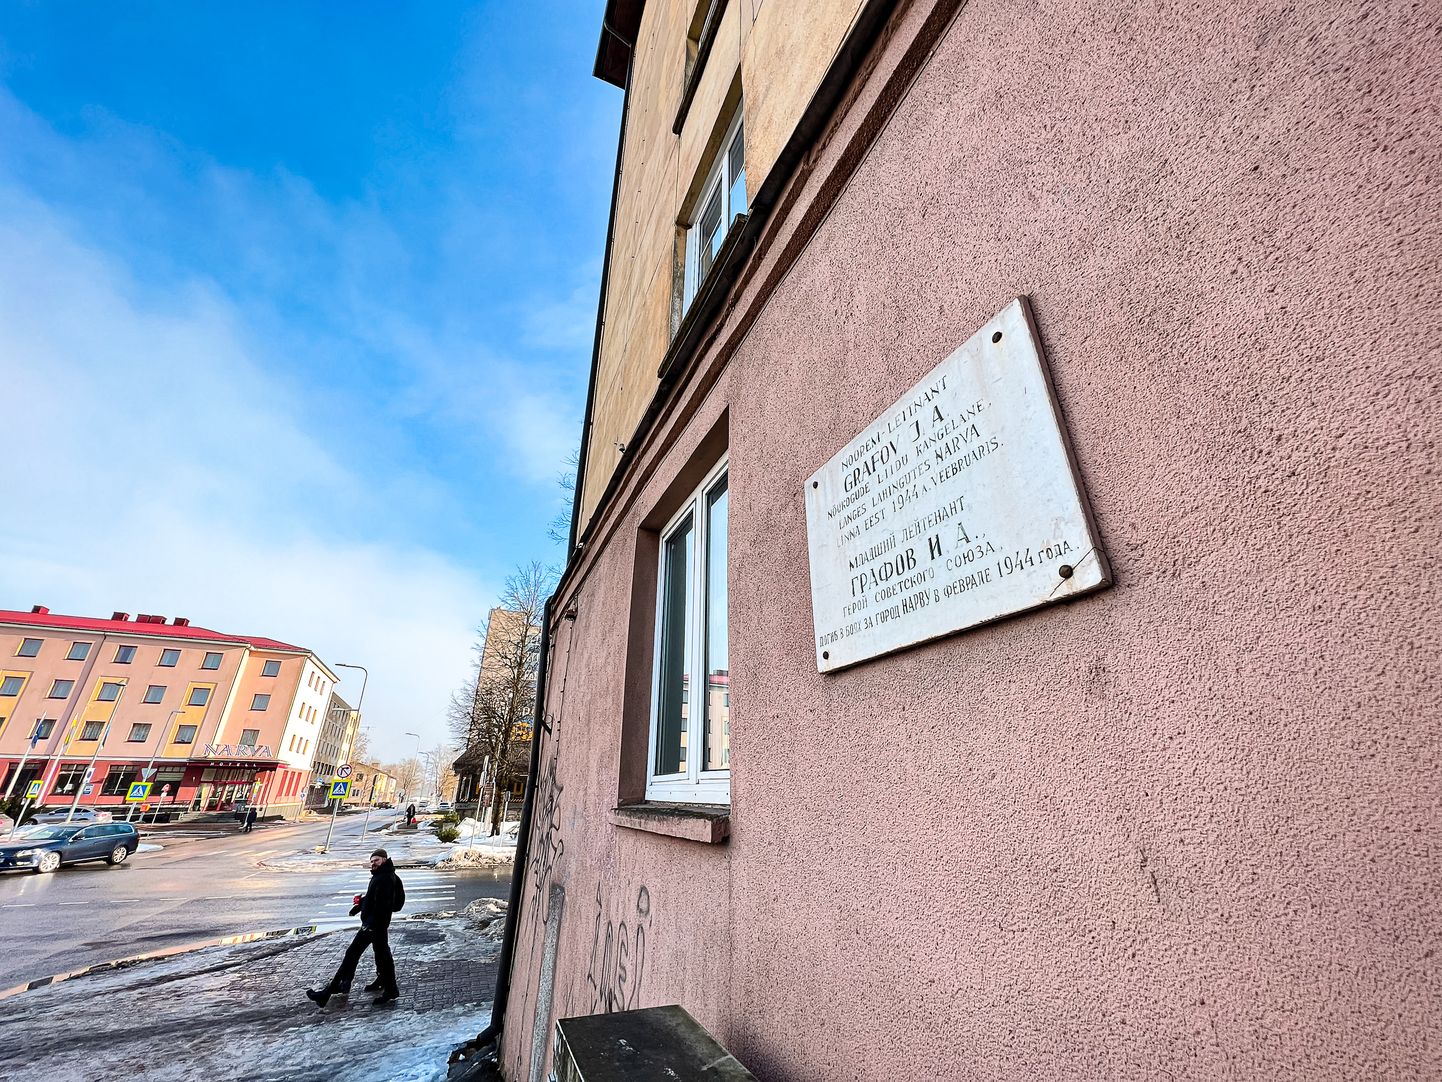 Нарвская улица имени красноармейца Игоря Графова, отличившегося и погибшего 22 февраля 1944 года во время форсирования реки Нарва.